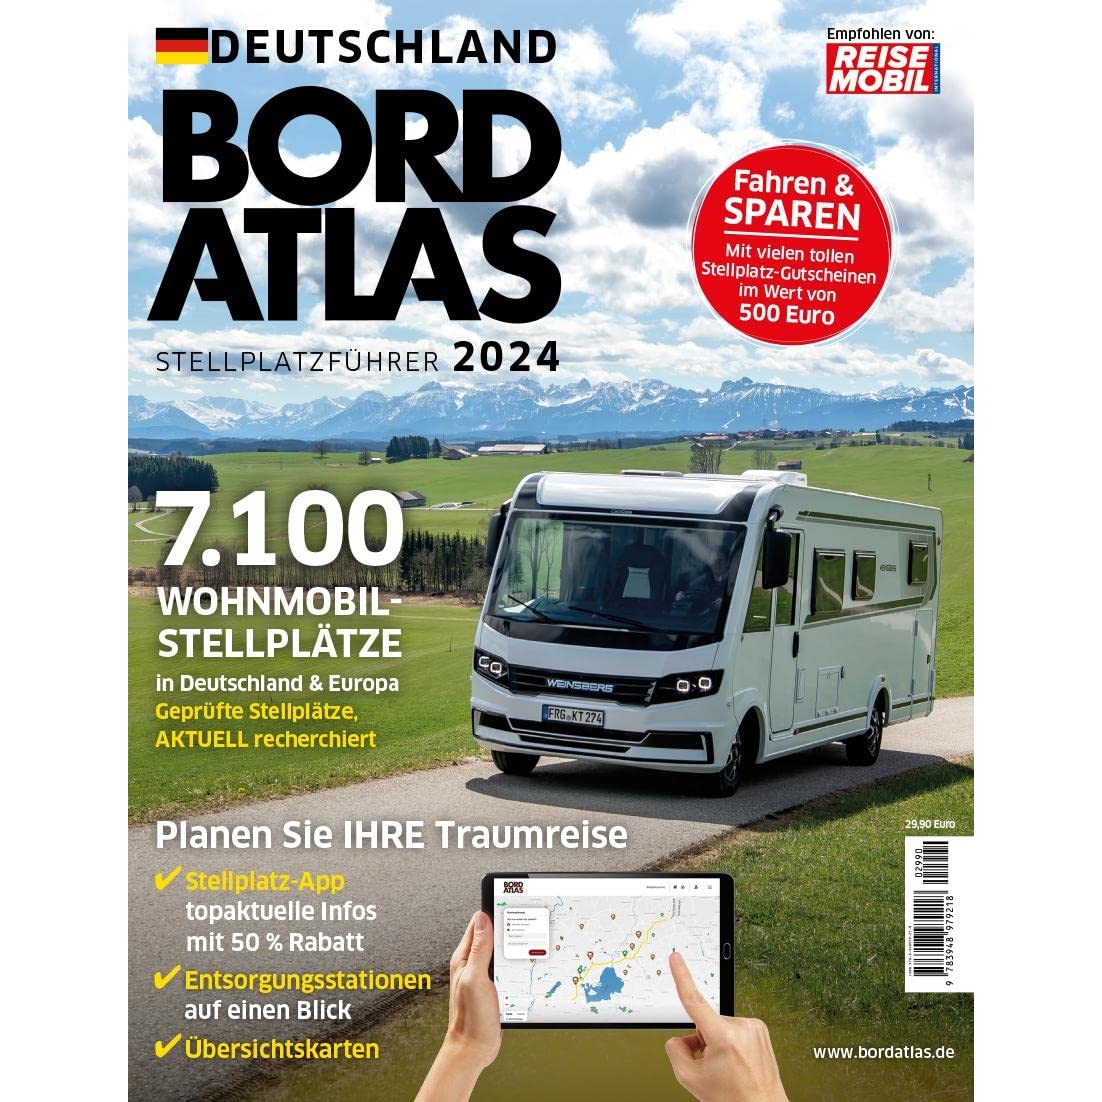 Reisemobil Bordatlas Stellplatzfuehrer 2024 beide Baende Deutschland und Europa im Paket